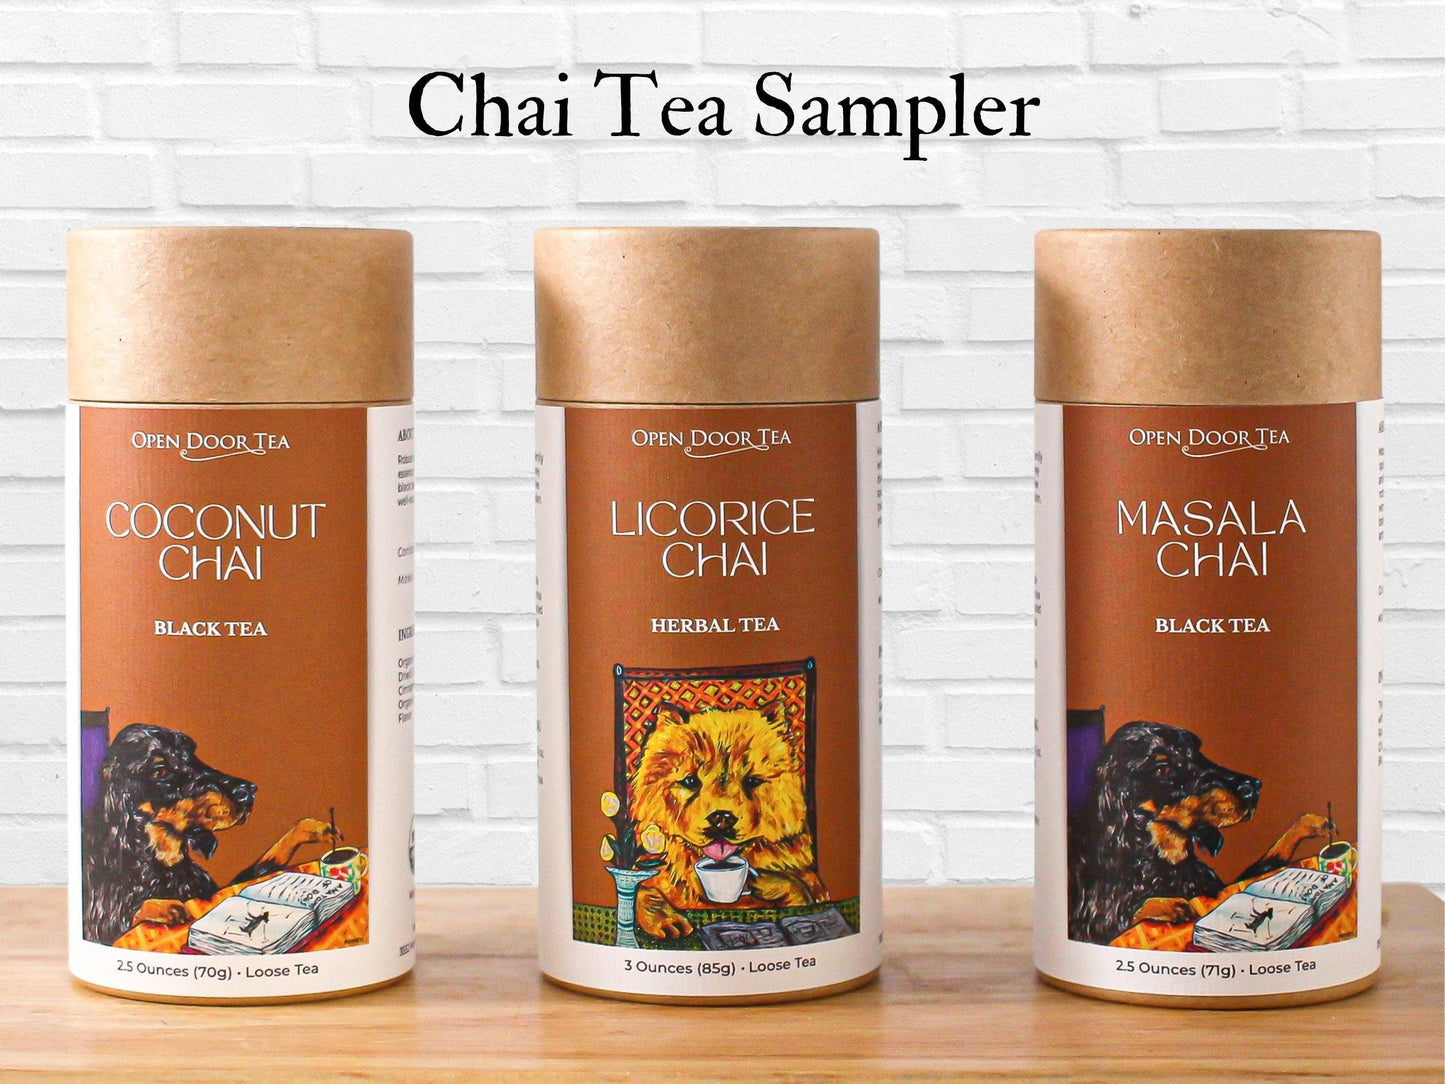 Chai Tea Sampler by Open Door Tea